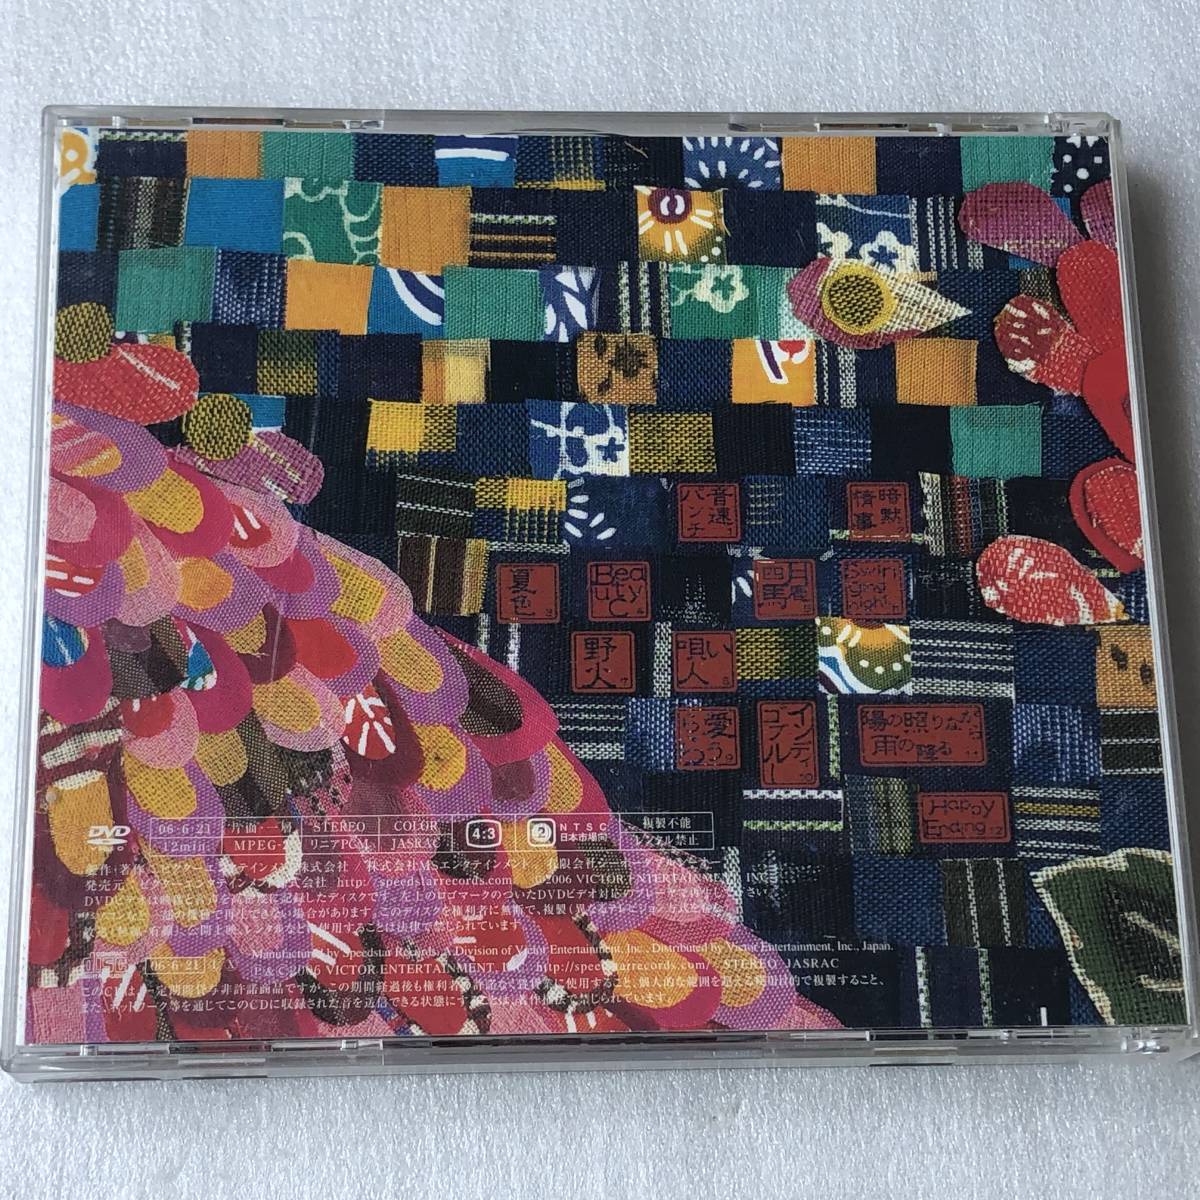 中古CD Cocco コッコ/ザンサイアン(初回盤CD+DVD) 5th(2006年) 日本産,J-POP系_画像2